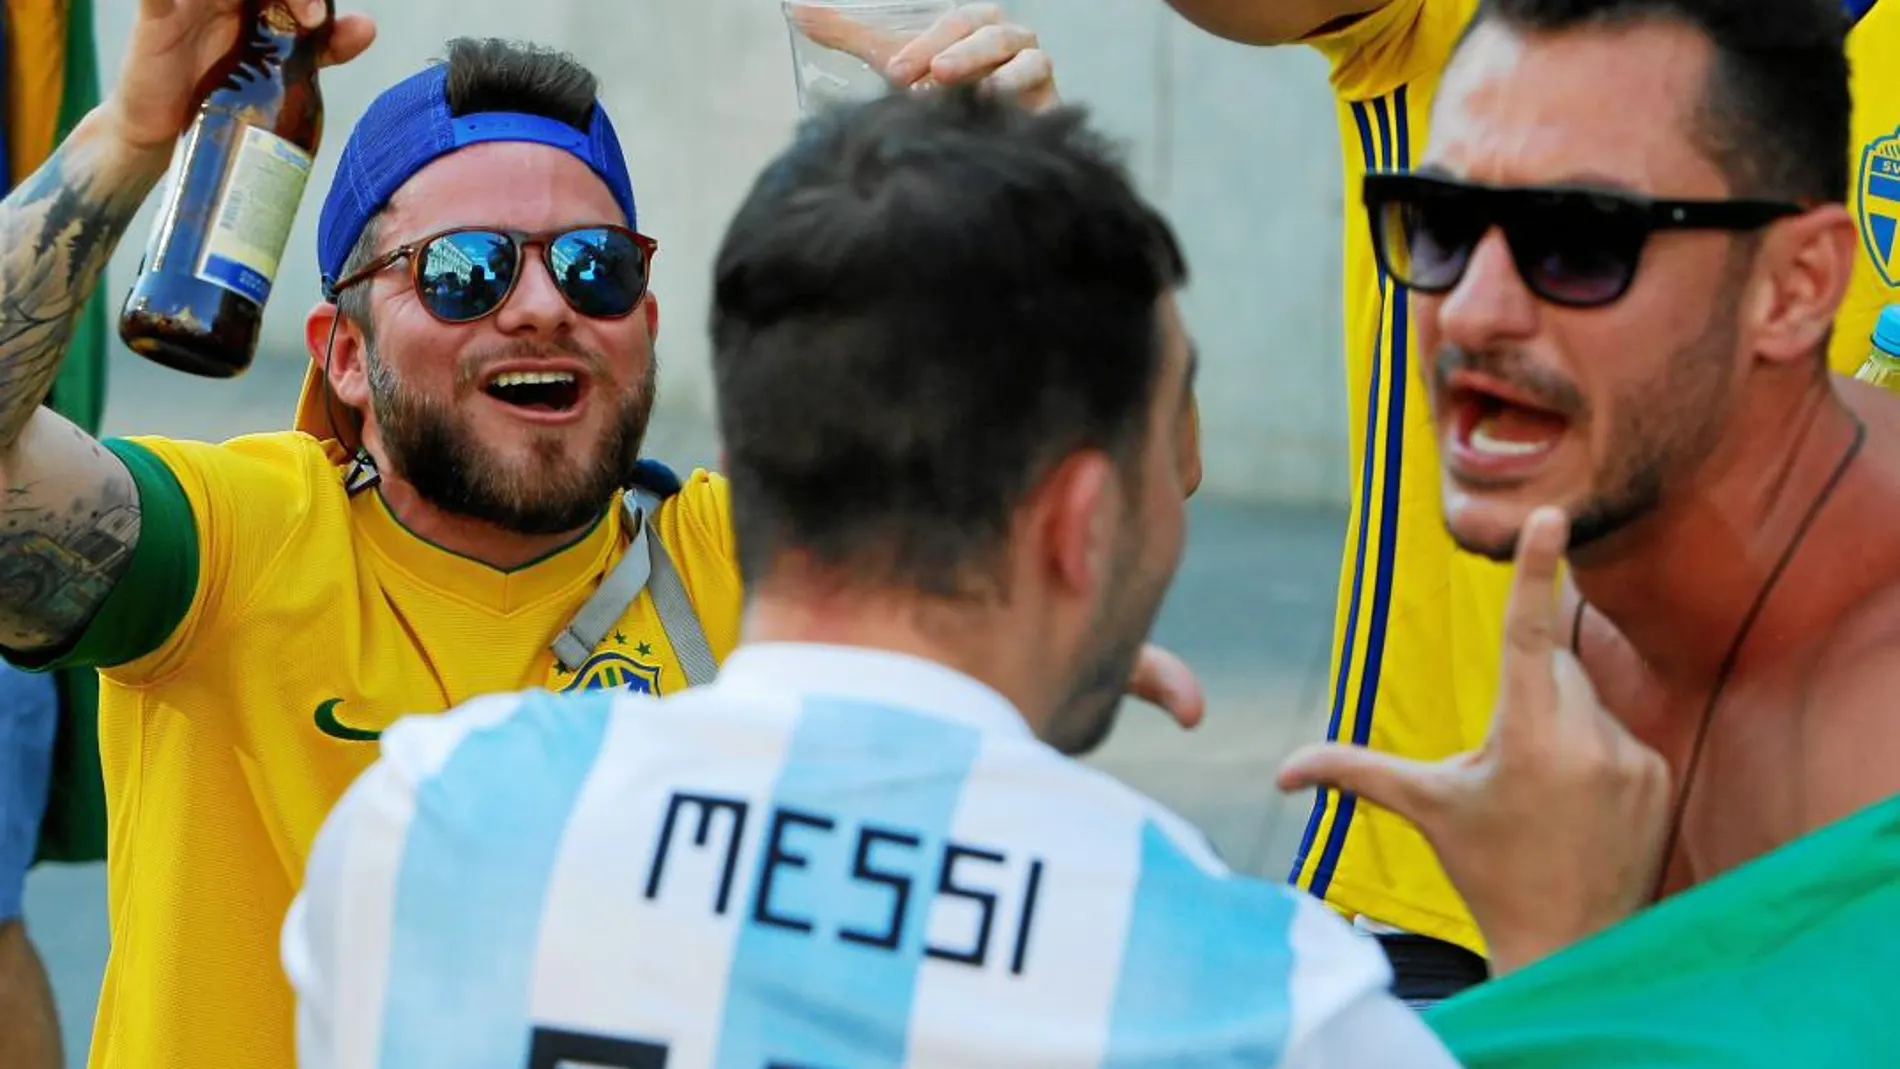 Aficionados de Brasil y Argentina ajenos al sufrimiento que viven sus respectivas selecciones en el Mundial de Rusia